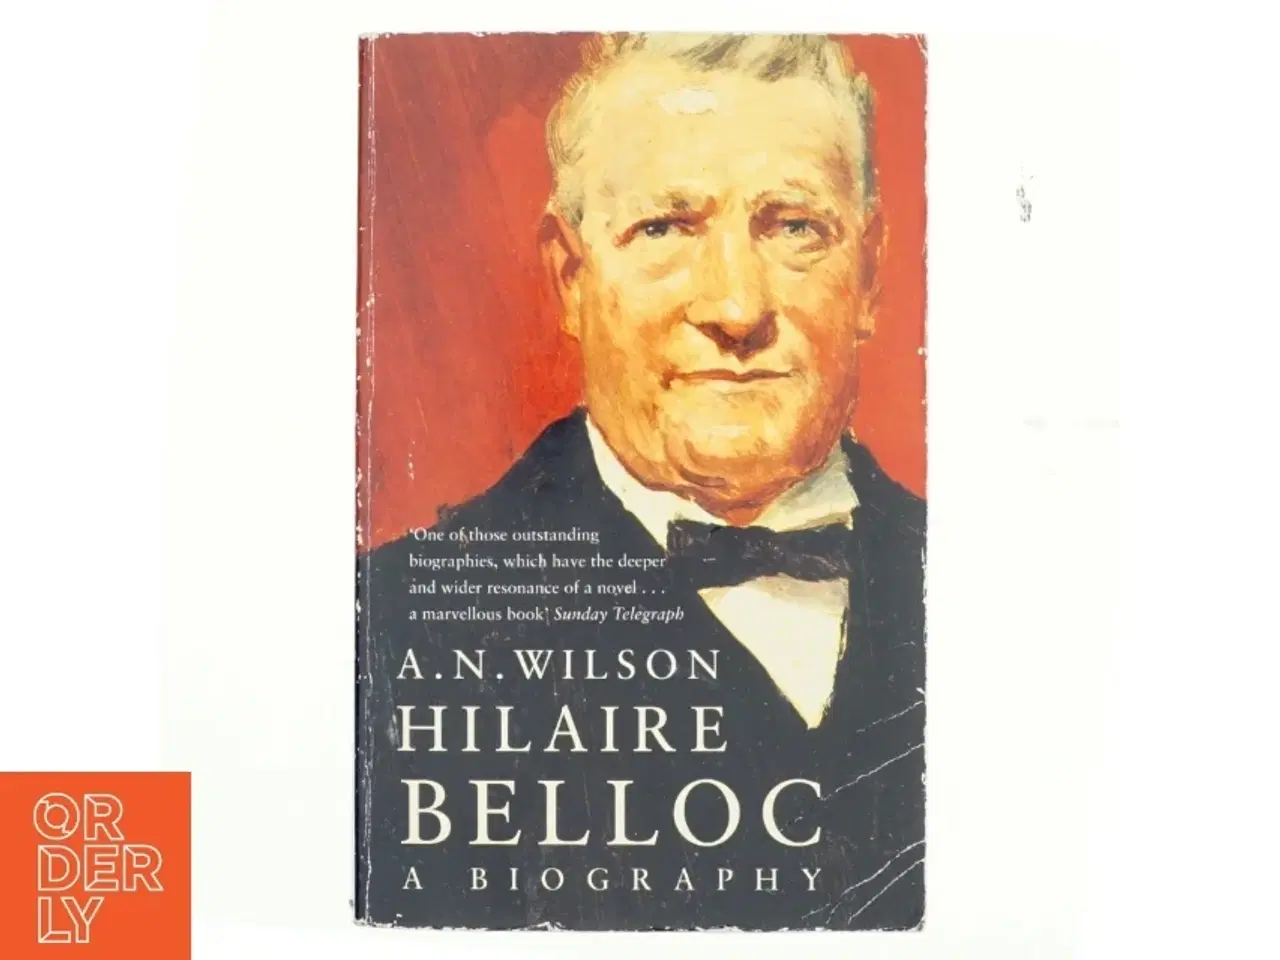 Billede 1 - Hilaire Belloc - A Biography af A.N. Wilson (Bog fra Mandarin